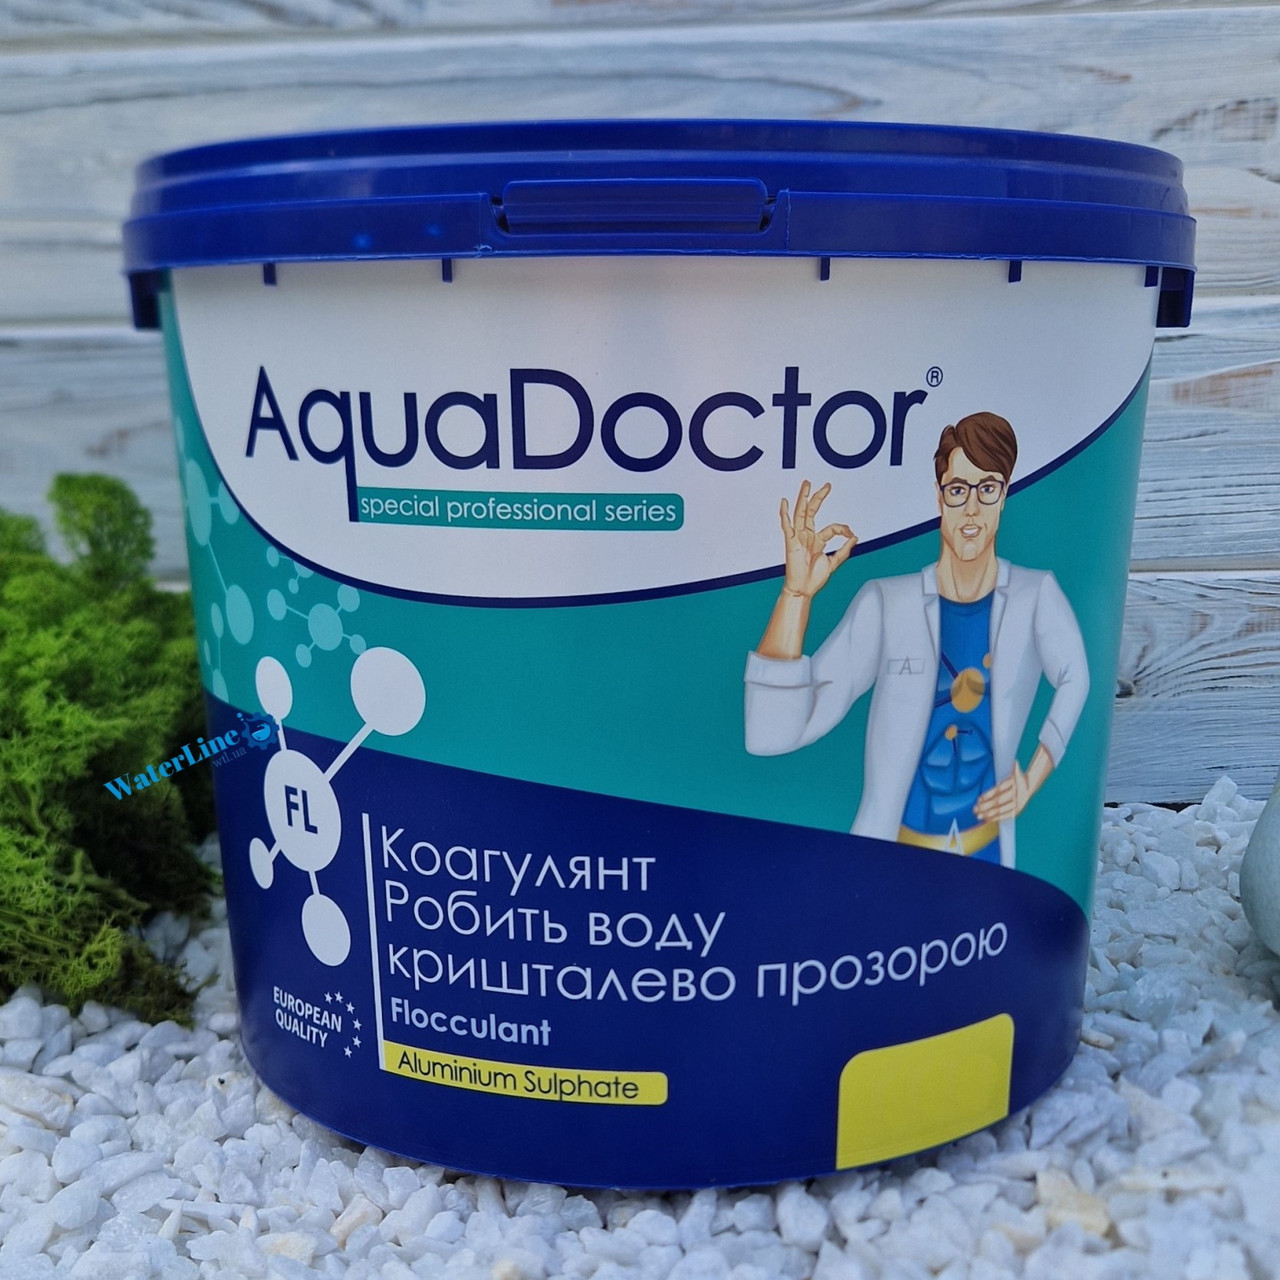 Коагулянт (флокулянт) проти мутності у воді Aquadoctor FL 1 кг порошку | Аквадоктор